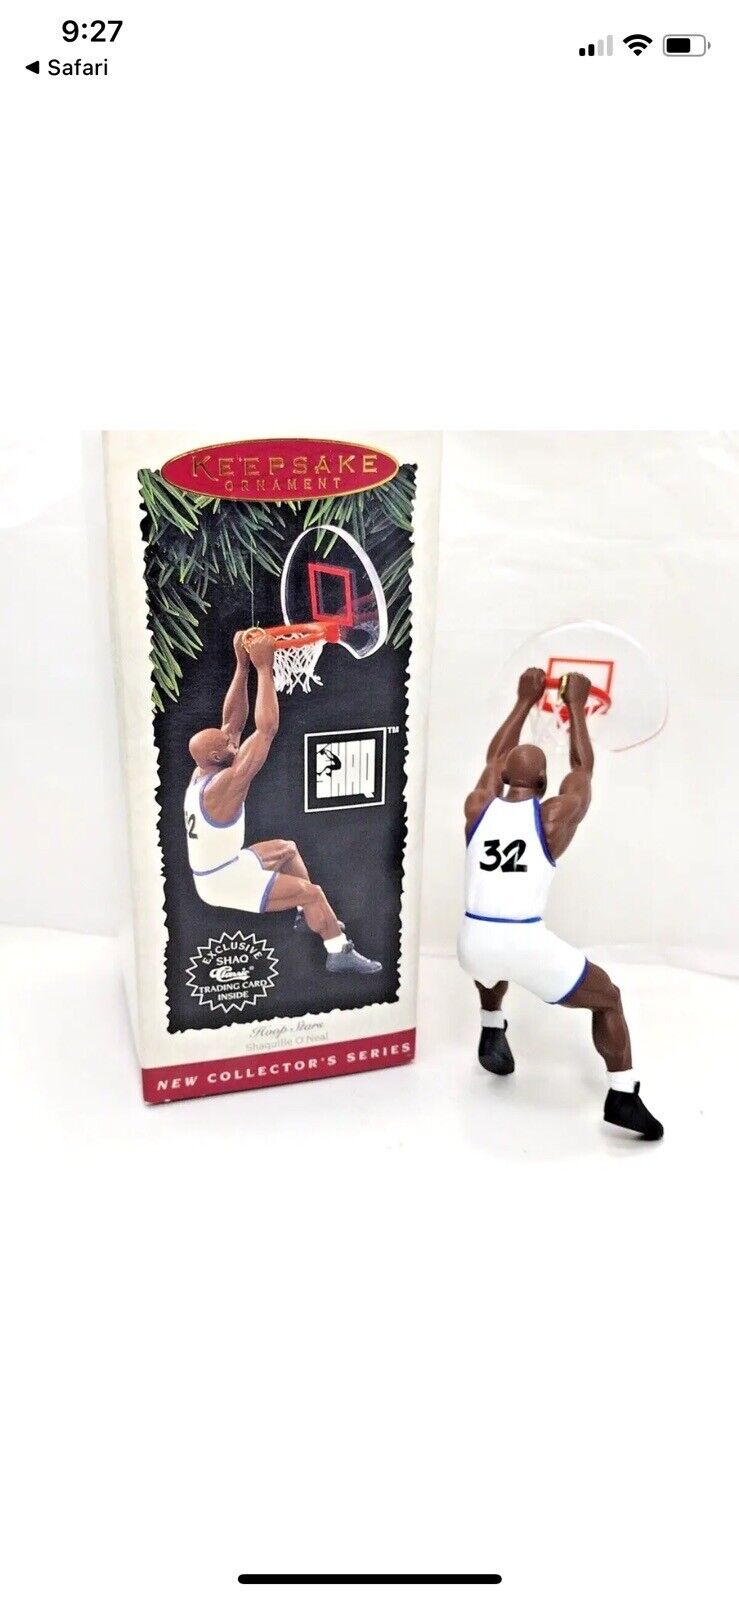 1995 Hallmark Keepsake Ornament Hoop Stars Shaquille O\'Neal Shaq NBA Collector